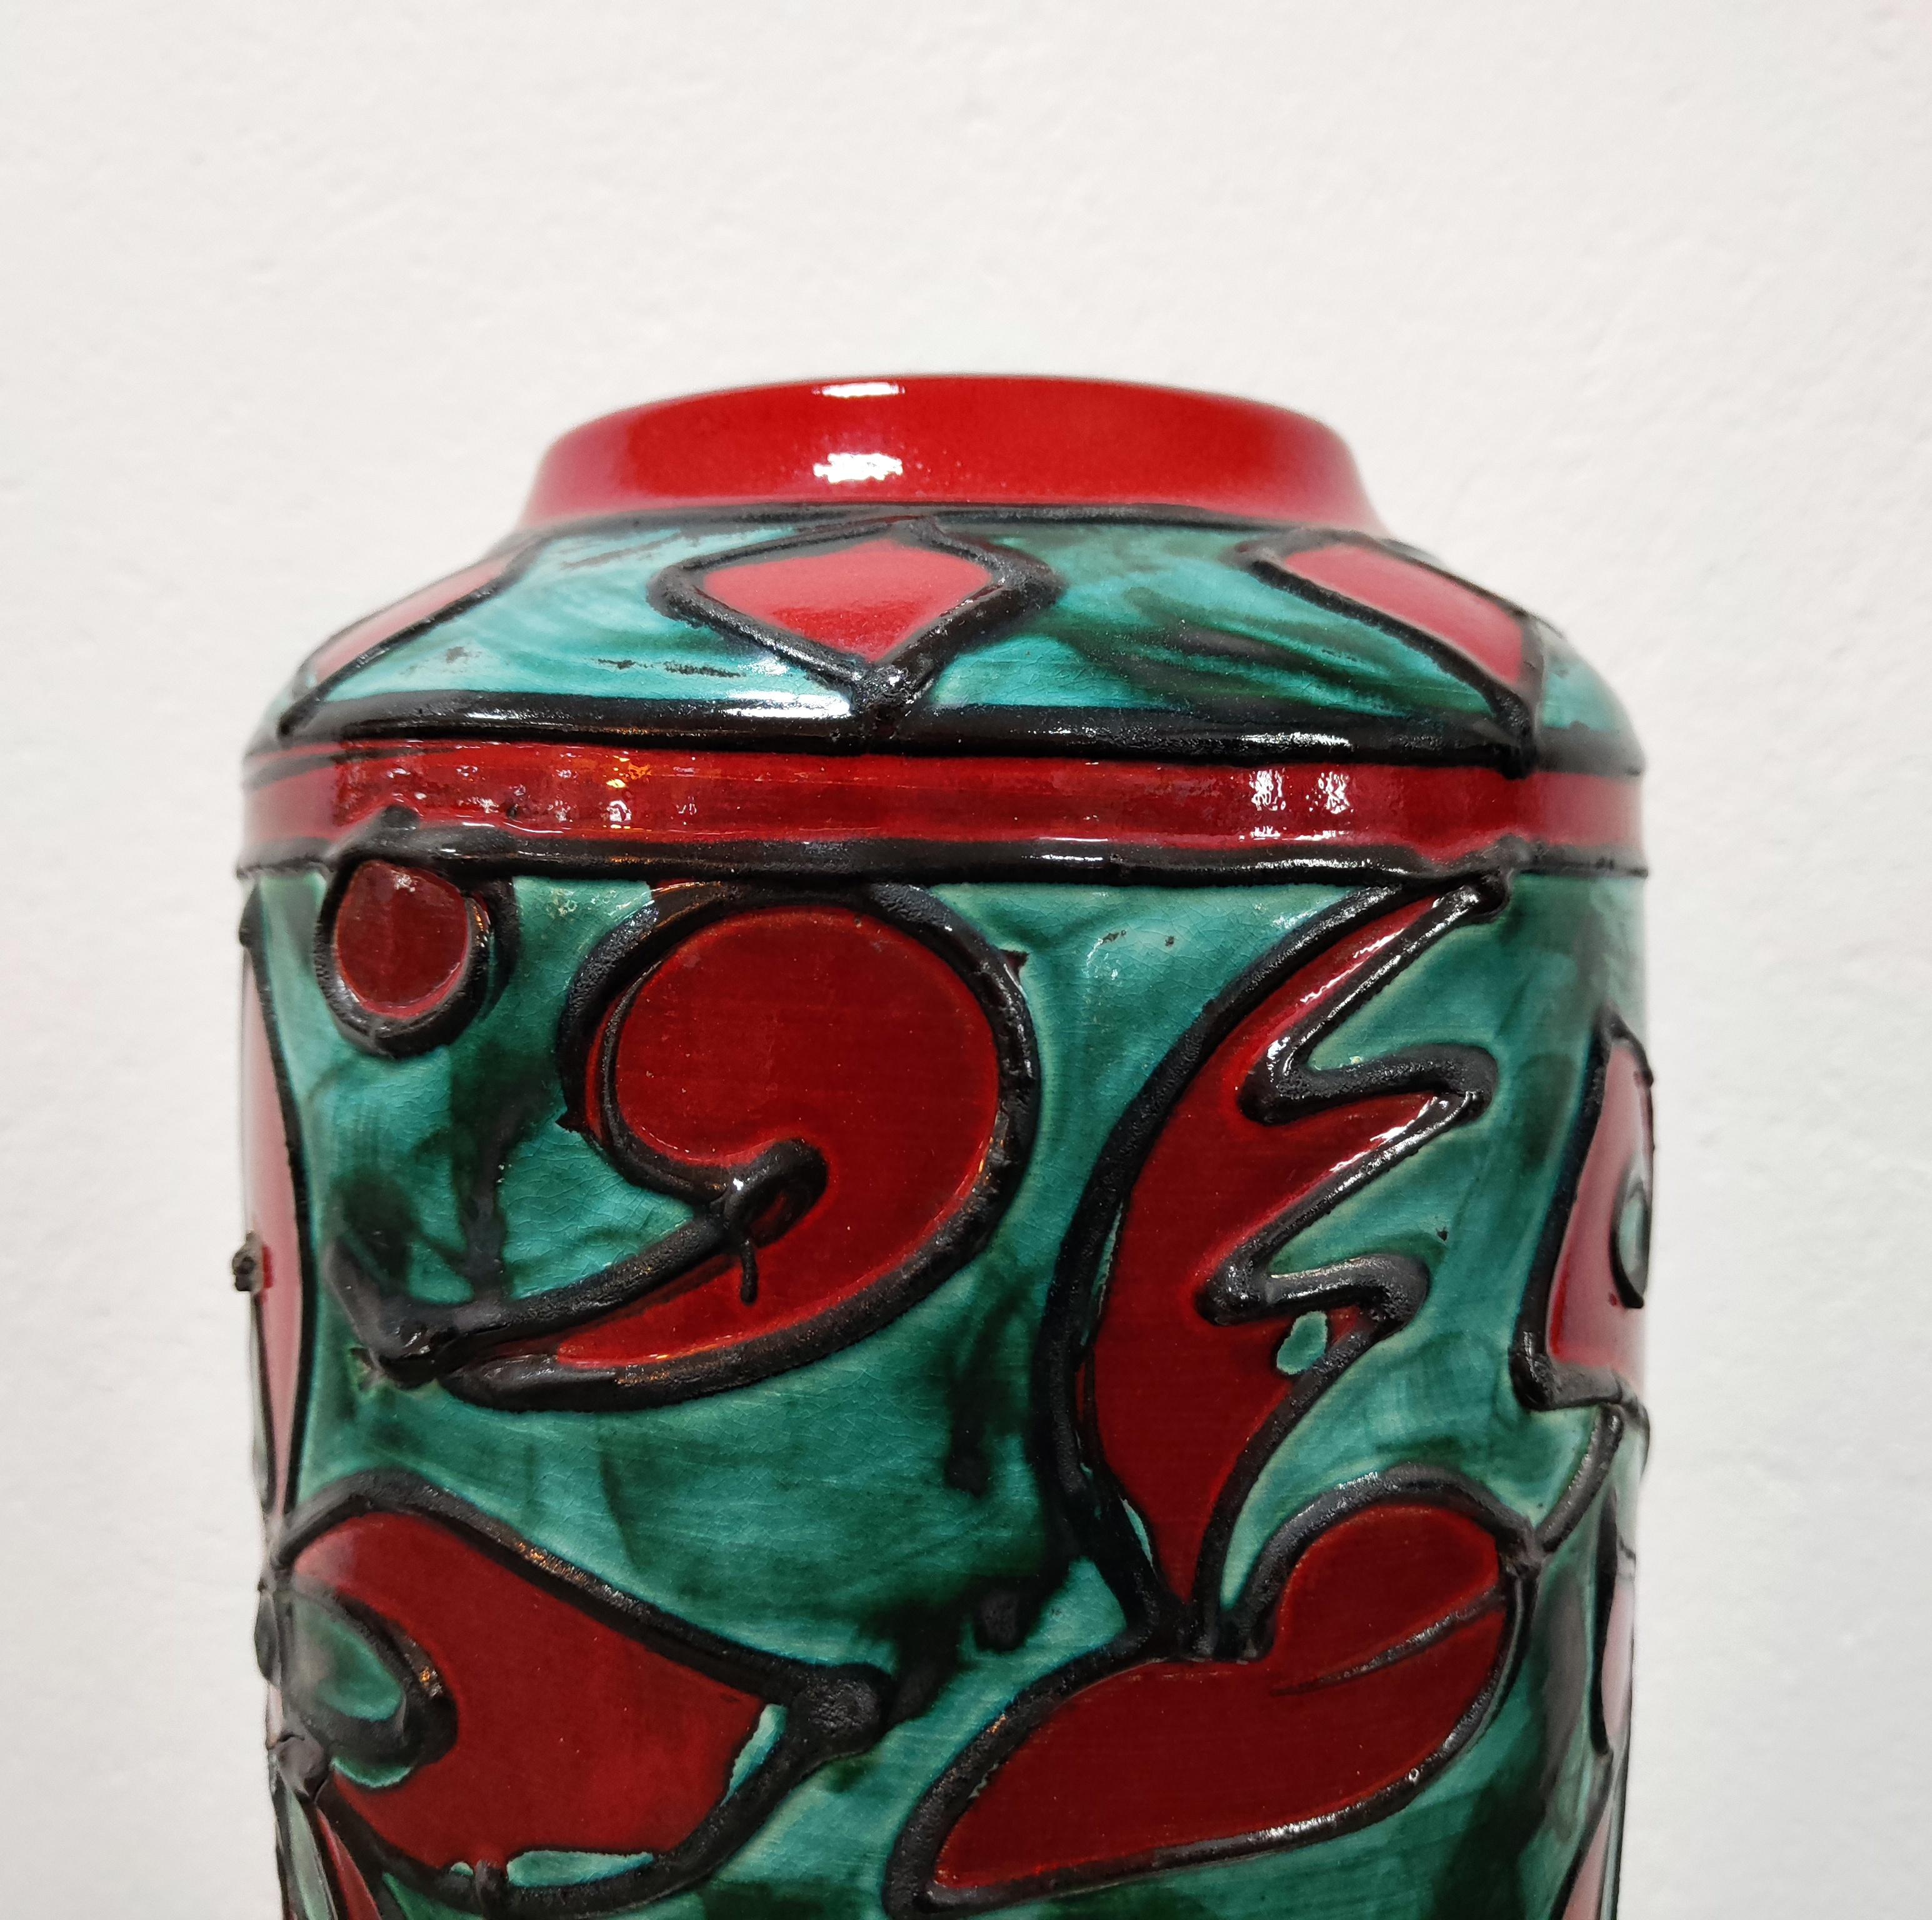 Dans cette annonce, vous trouverez un très grand et magnifique vase de sol en céramique de lave grasse fabriqué par Scheurich à la fin des années 1960. Le vase présente des éléments floraux dans un contraste frappant de vert et de rouge. Cette pièce